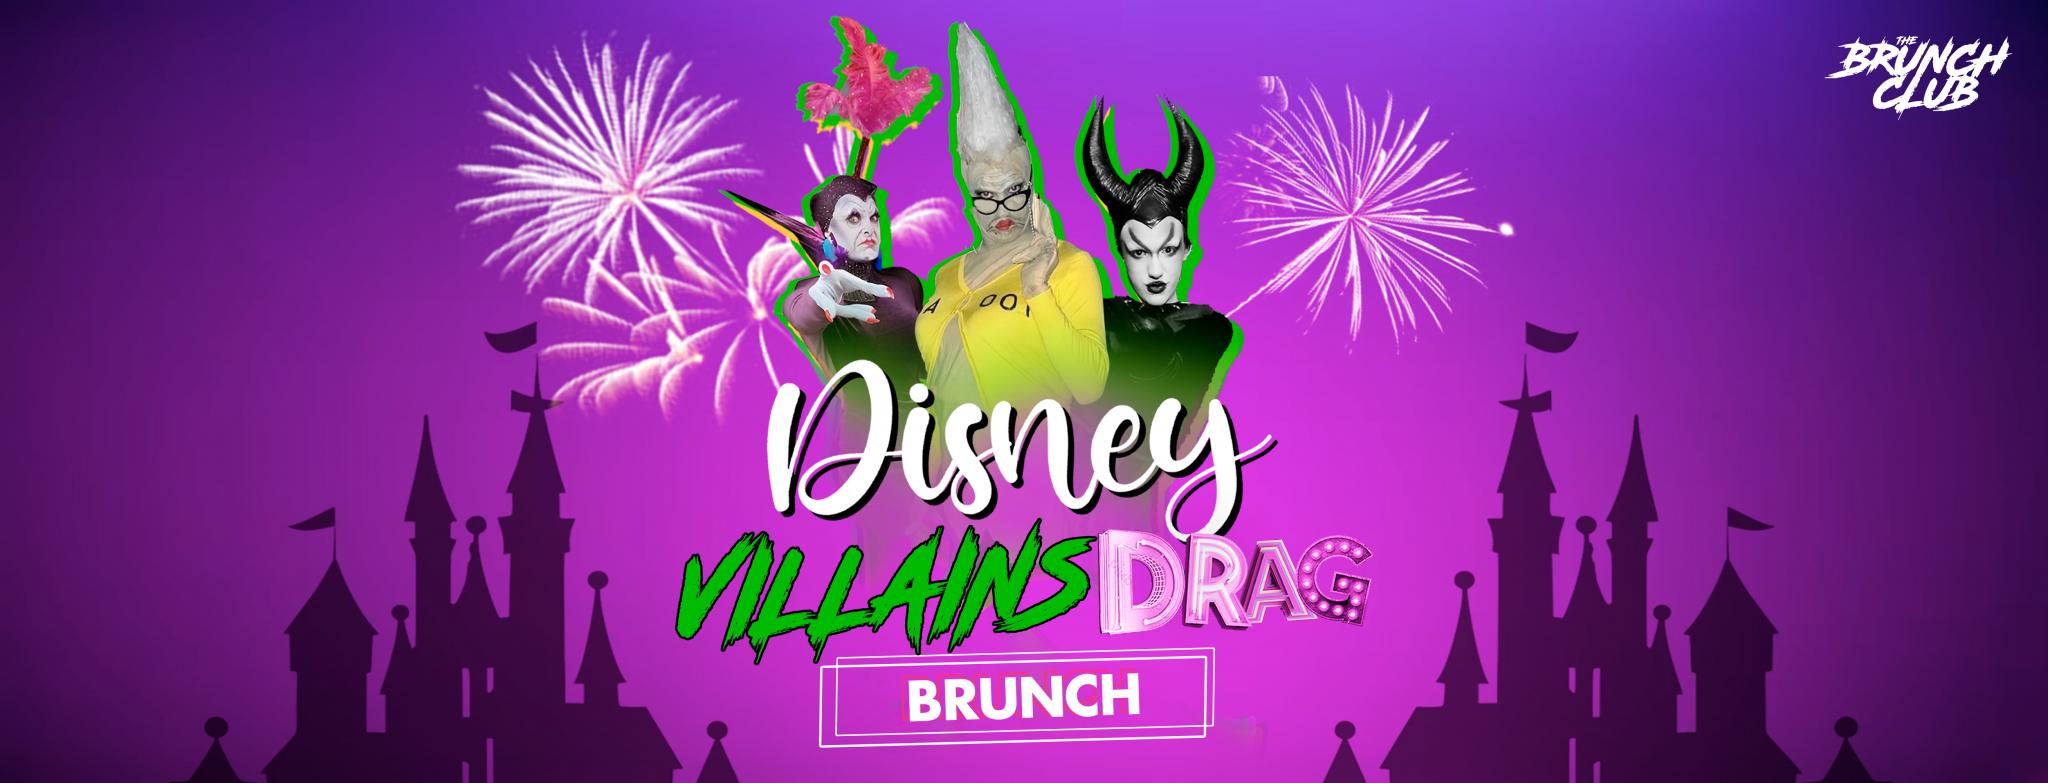 Disney Villains Drag Bottomless Brunch - Dublin